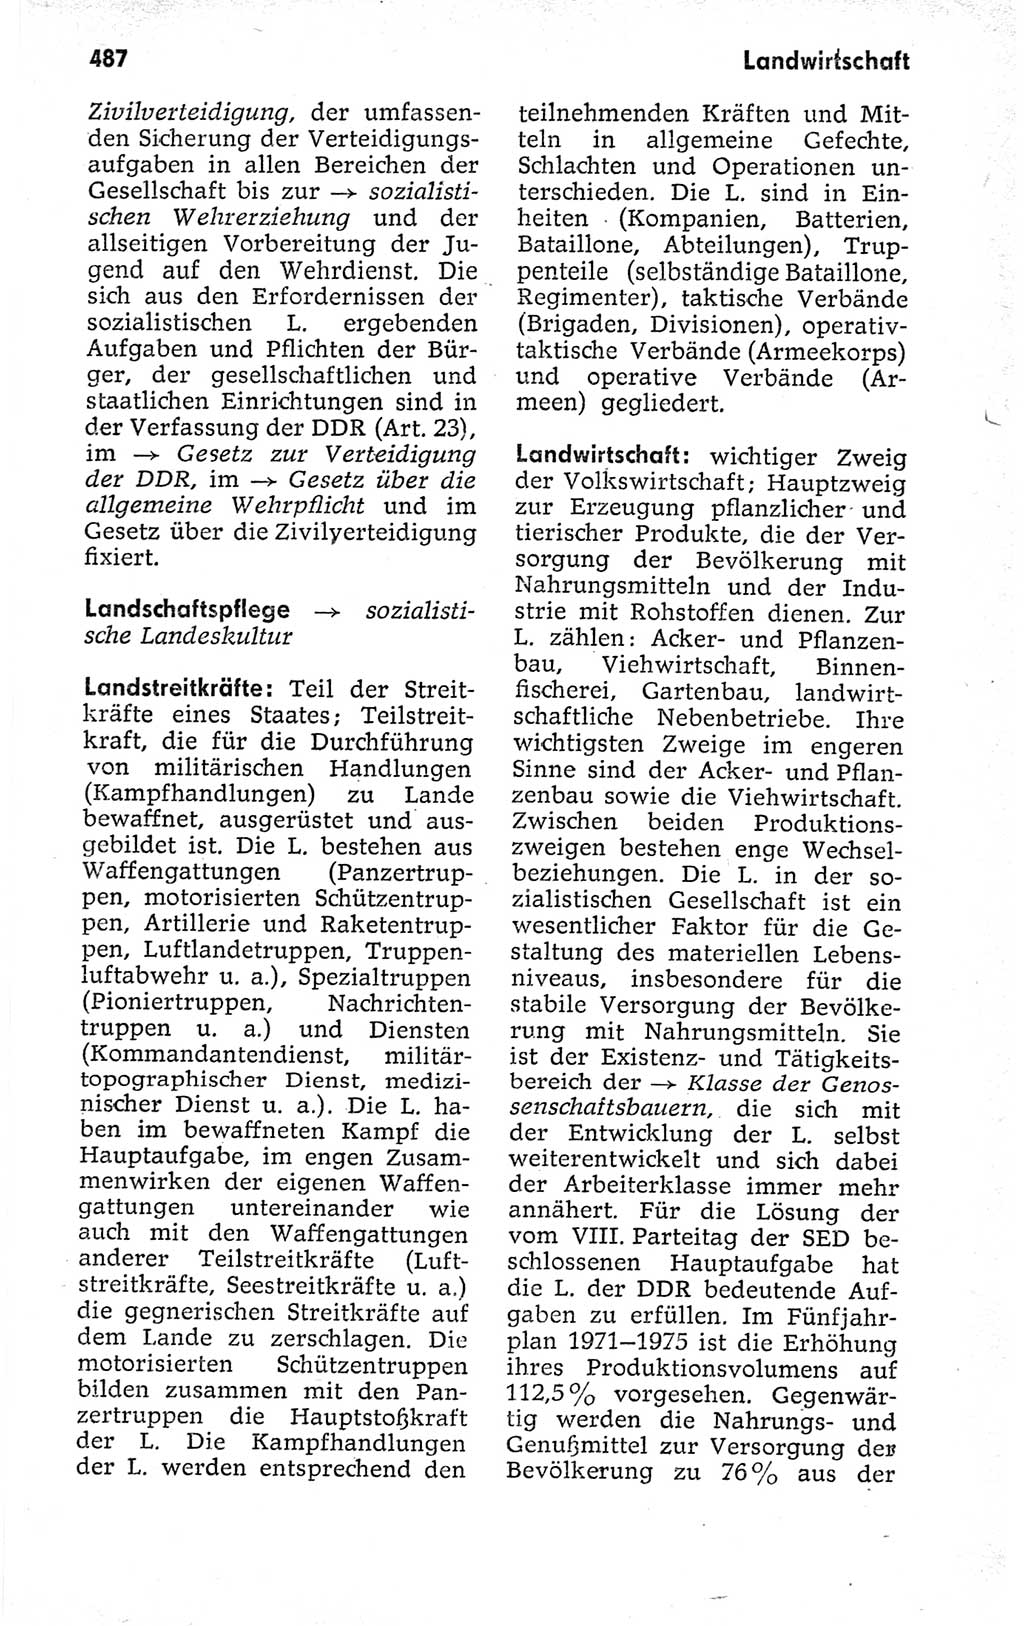 Kleines politisches Wörterbuch [Deutsche Demokratische Republik (DDR)] 1973, Seite 487 (Kl. pol. Wb. DDR 1973, S. 487)